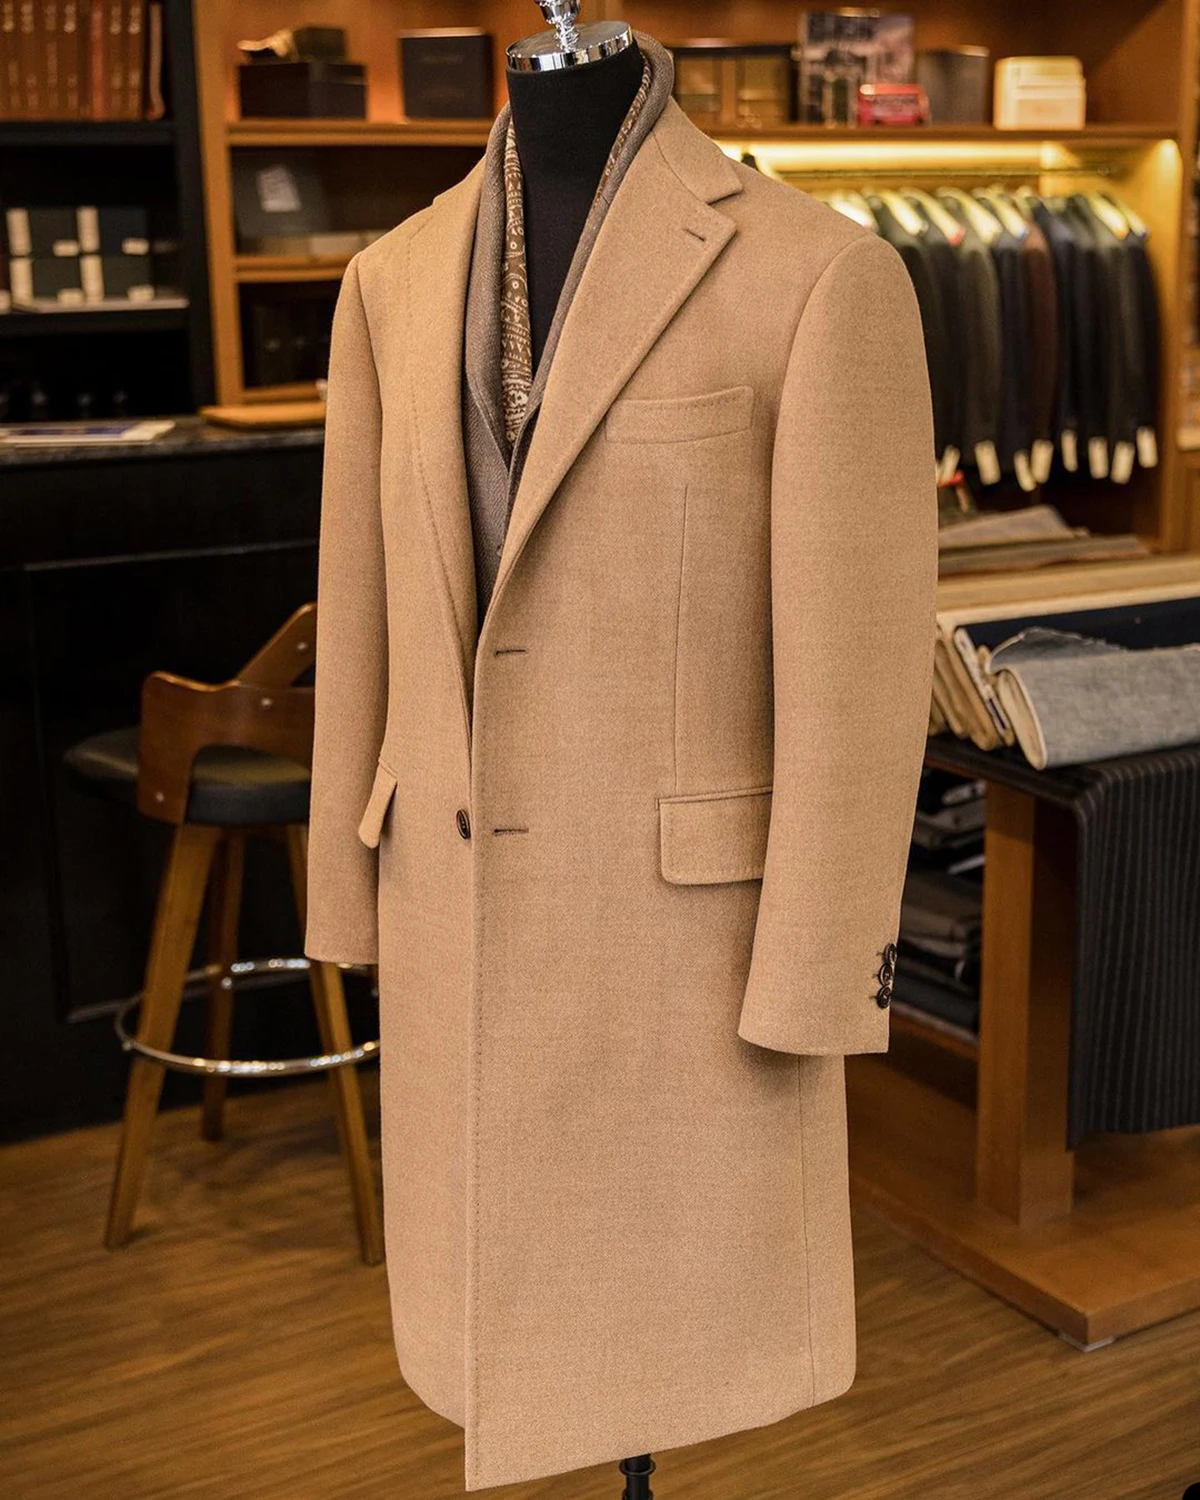 Men's Leisure Suit High-quality Cashmere Suit Autumn and Winter Khaki Woolen Suit Men's Trend Slim Wool Long Suit Jacket Coat